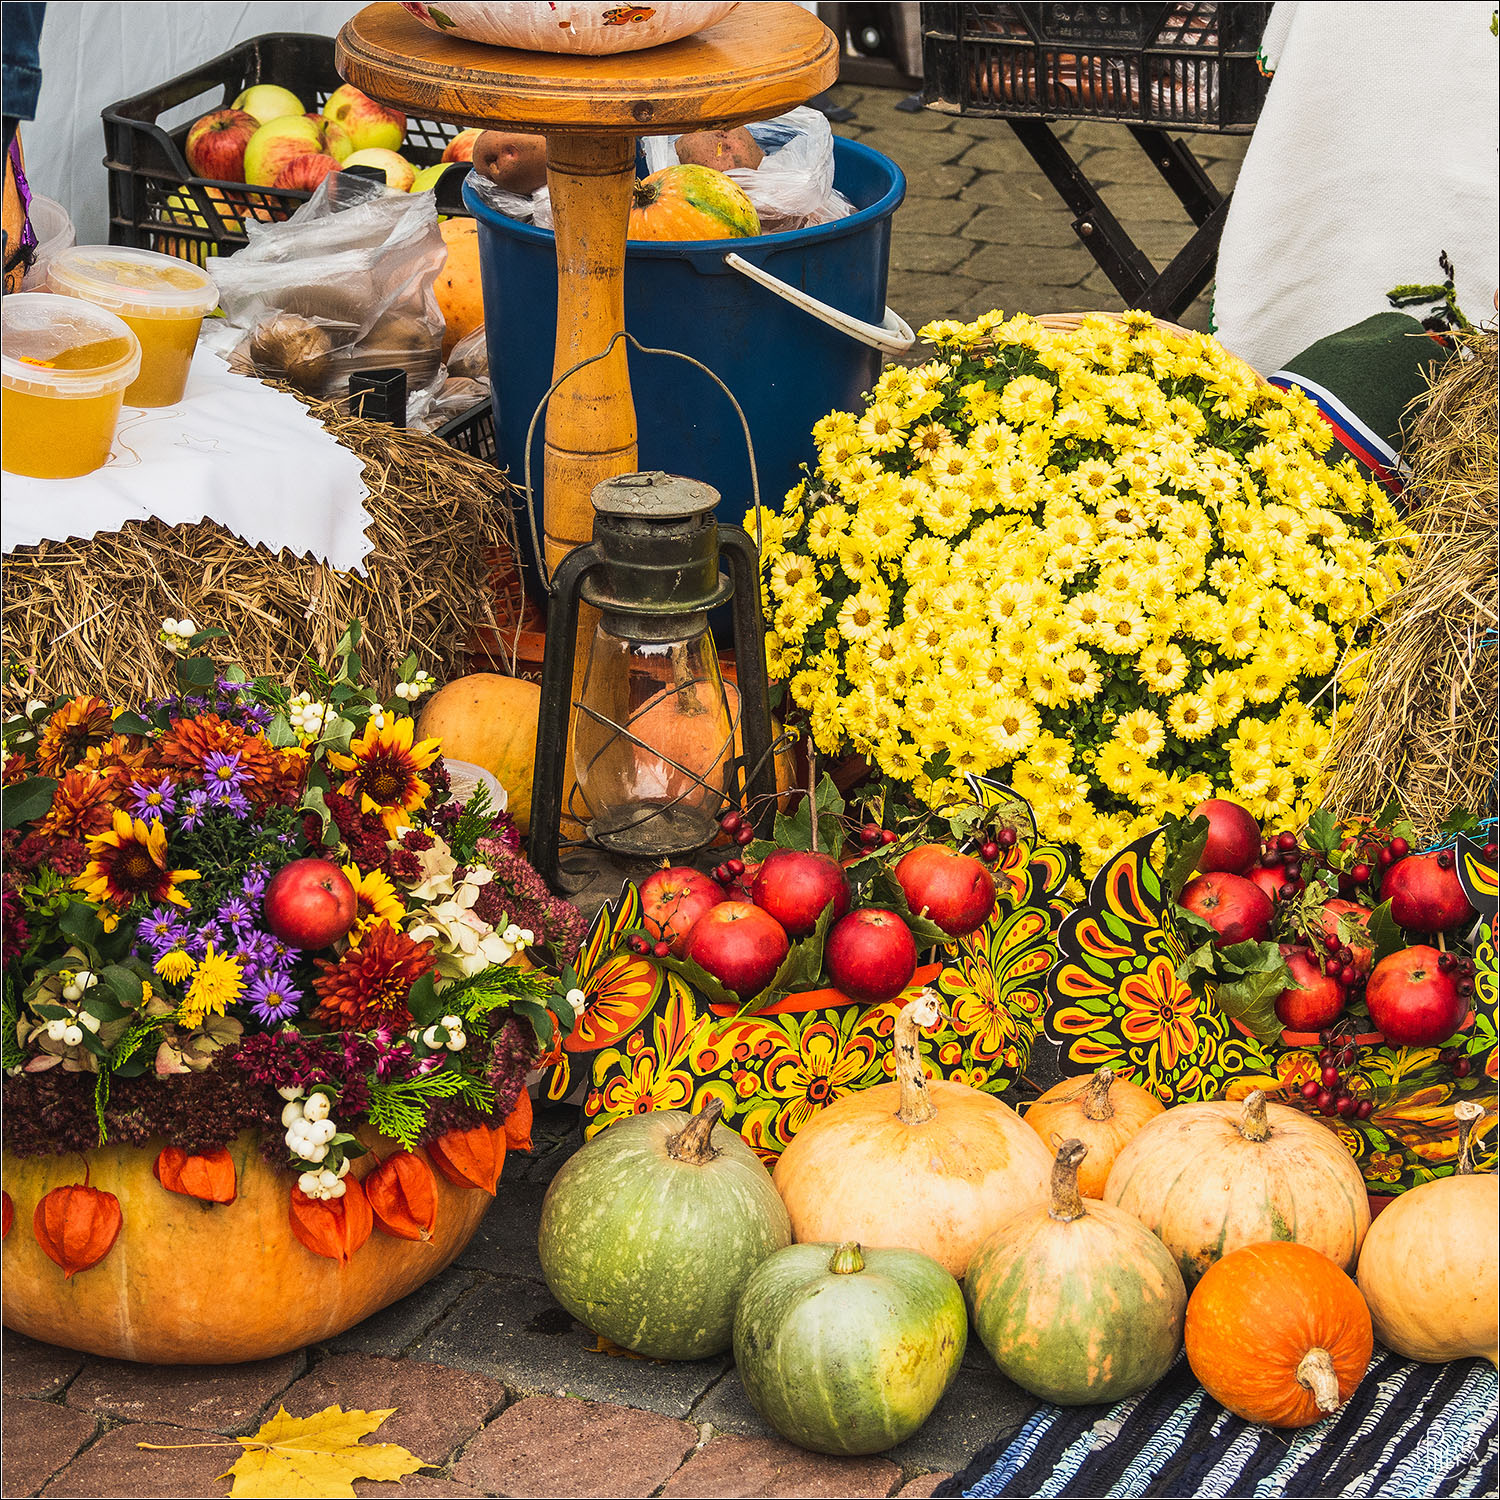 Erntedankfest - немецкий фестиваль урожая. немецкие праздники и традиции.